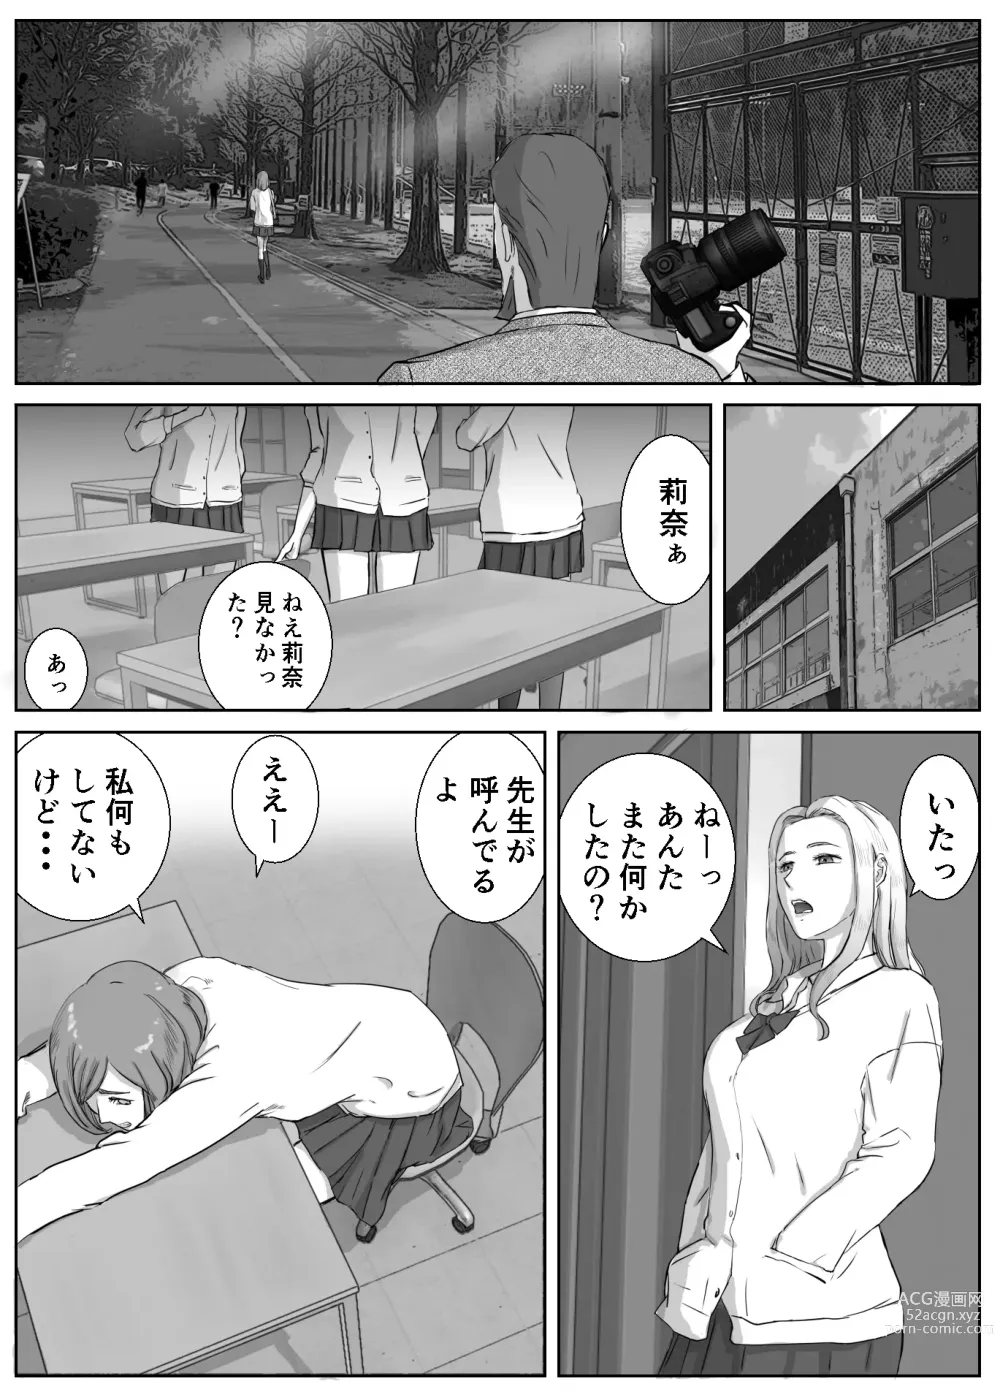 Page 10 of doujinshi Ano Hi no Uso 1